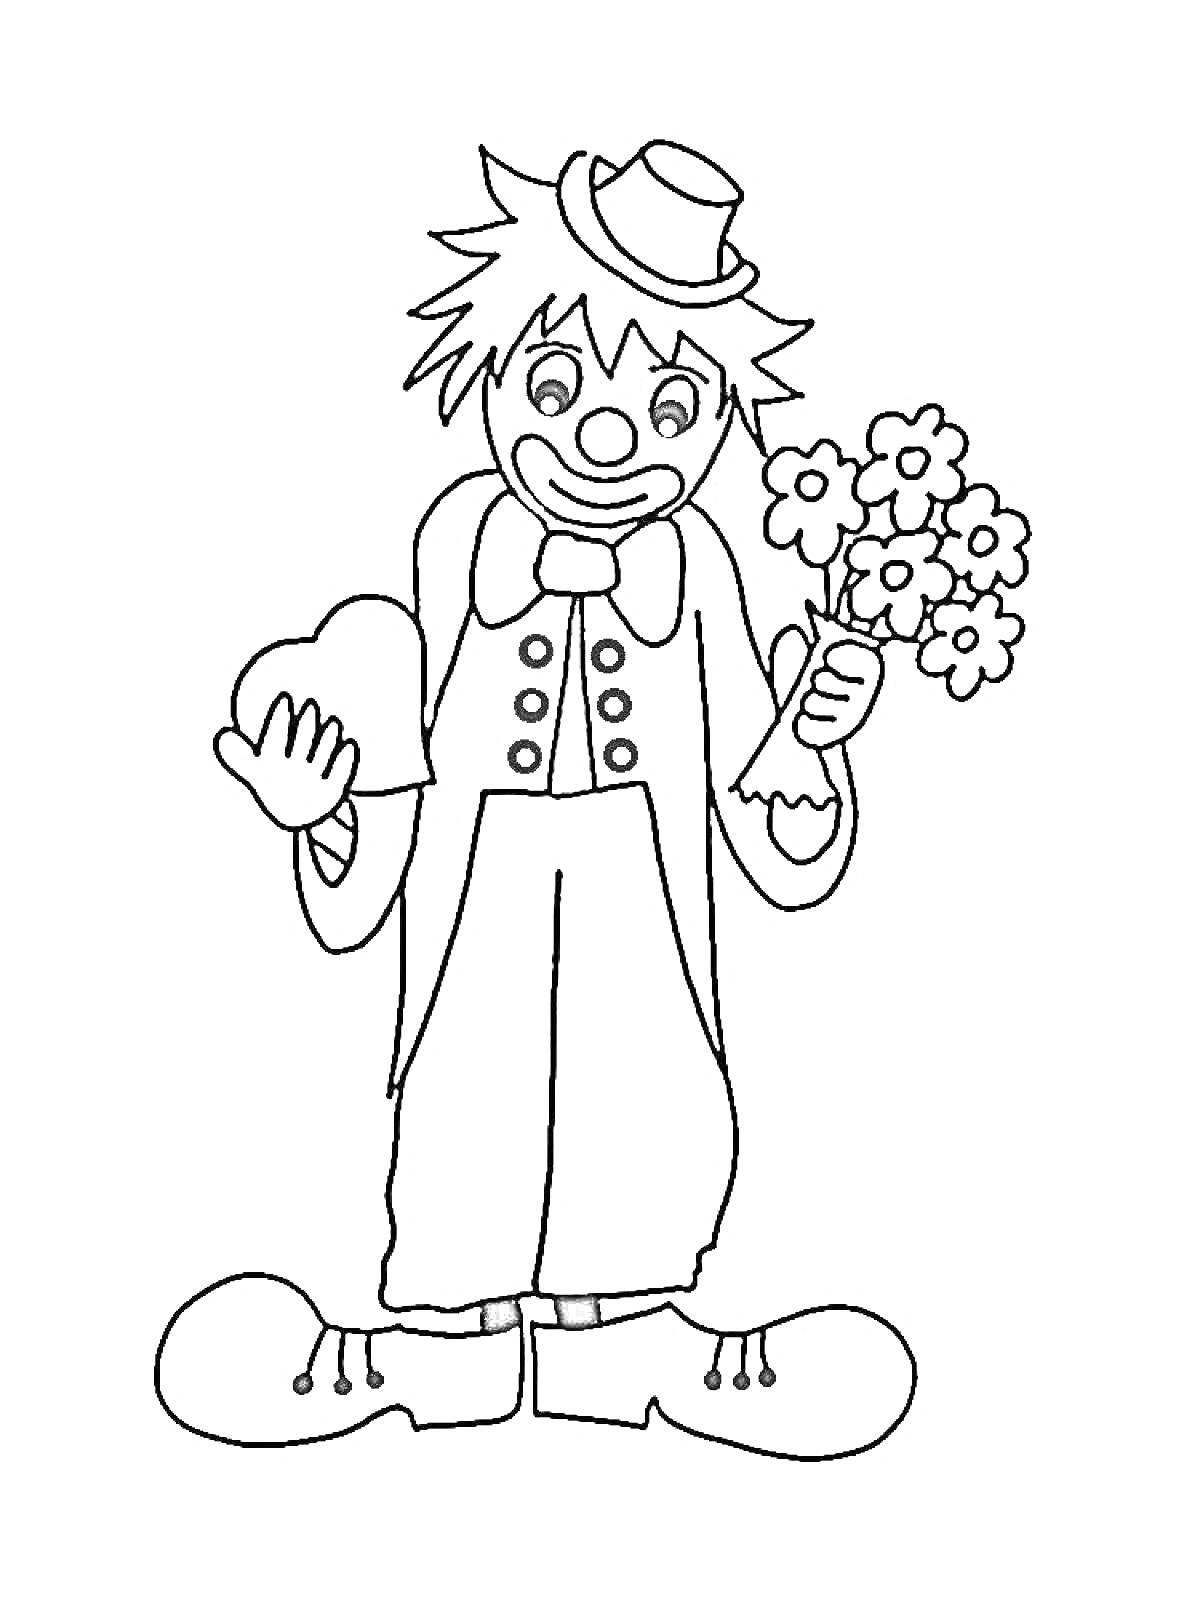 Раскраска Клоун с цветами и сердцем в руках